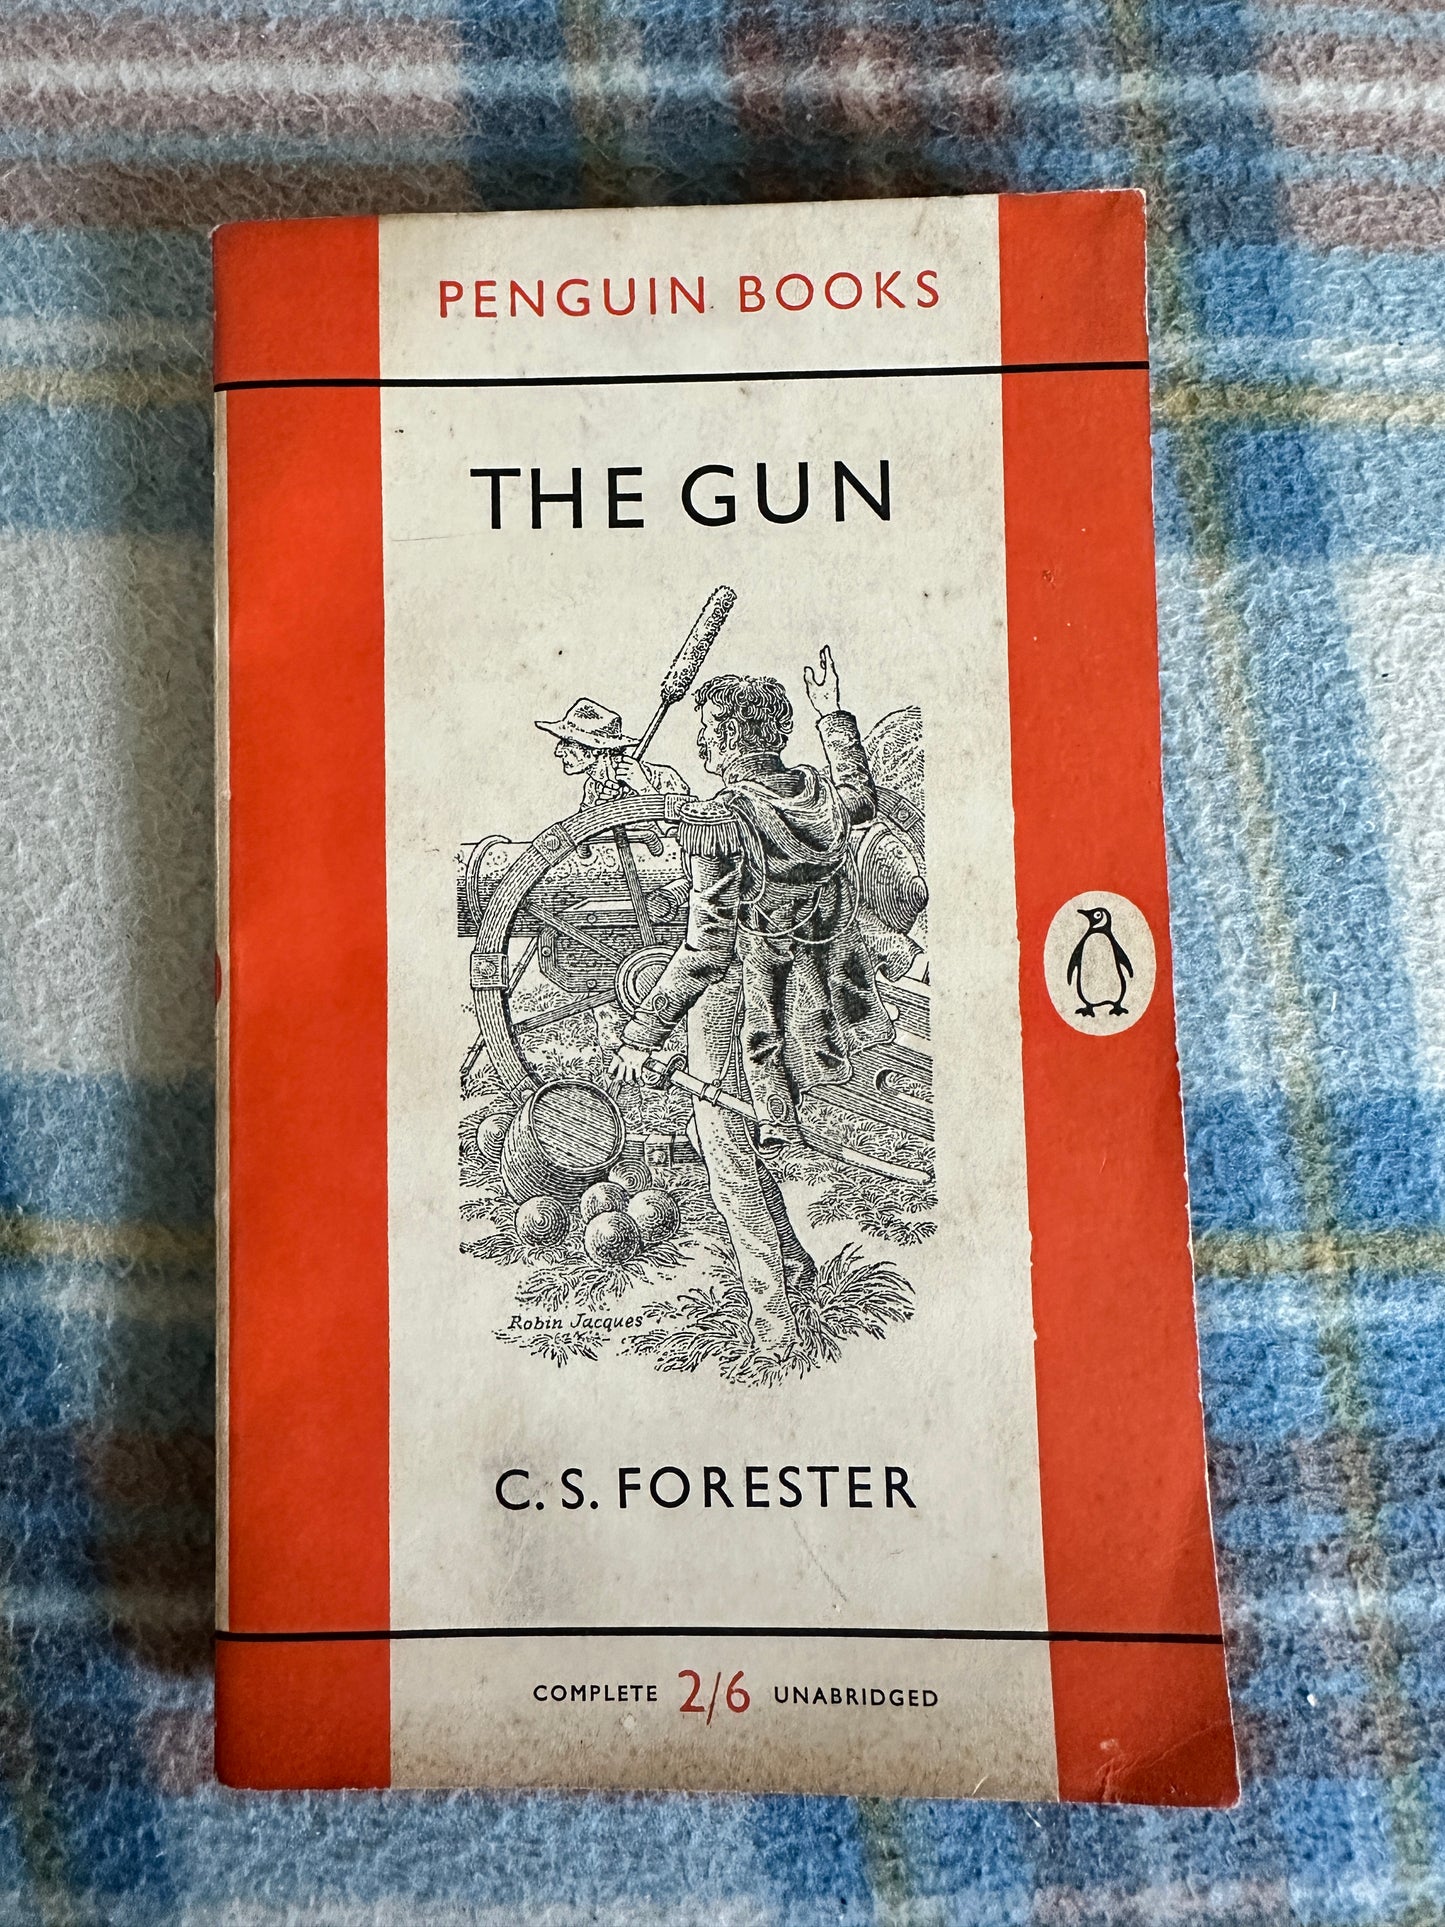 1956 The Gun - C. S. Forester(Penguin Books)